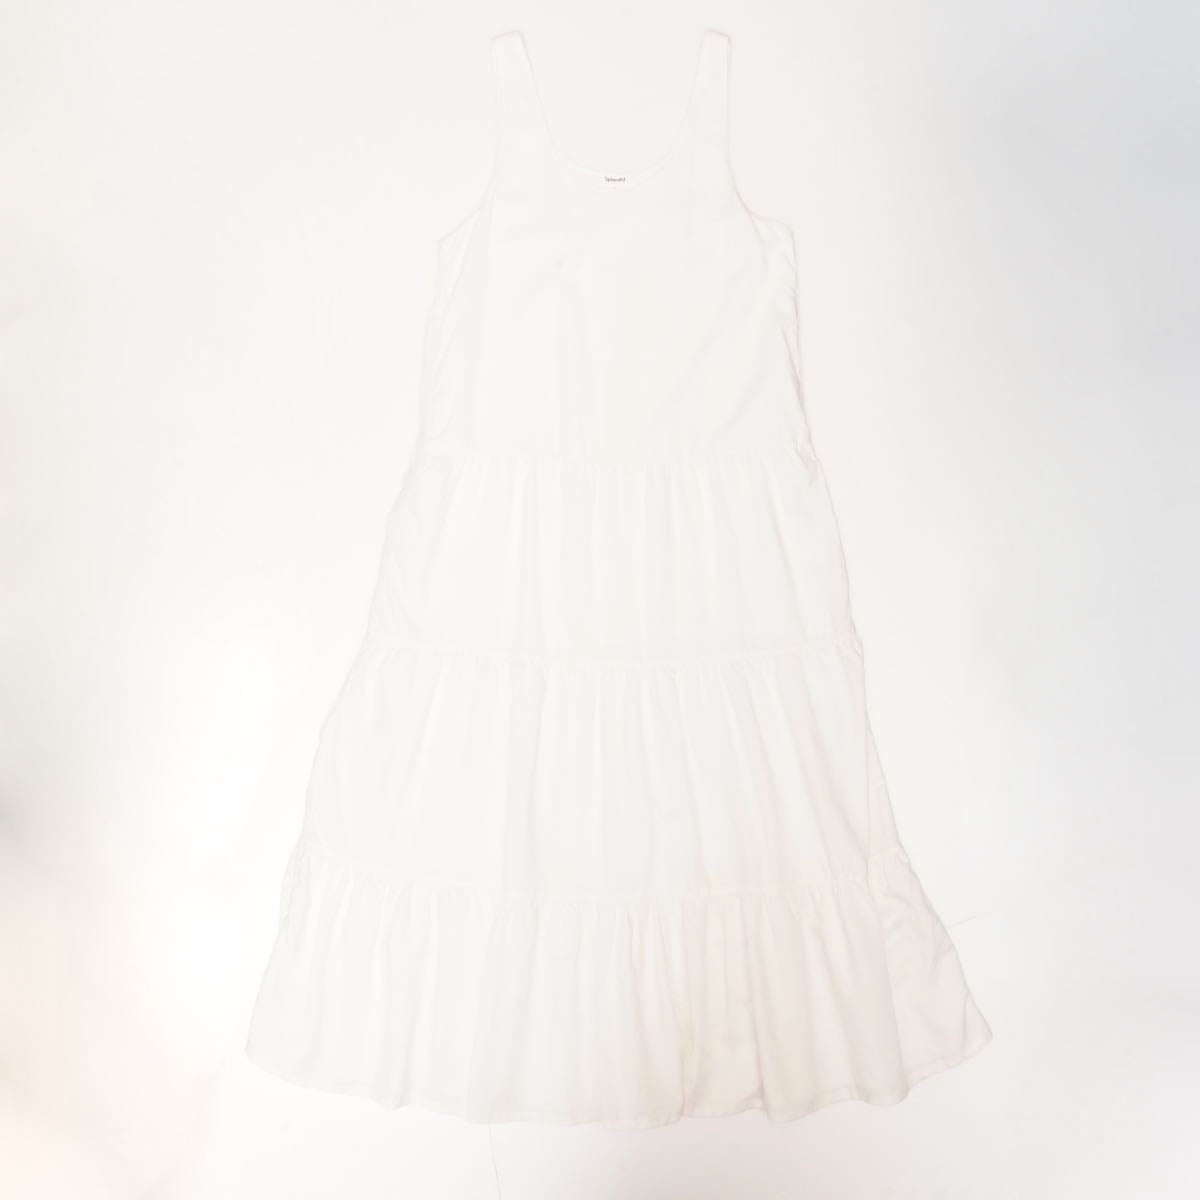 スプレンディッド  オフホワイト ノースリーブ ３段フレア ロングドレス ワンピース SPLENDID OFF-WHITE SLEEVELESS DRESS WOMENS